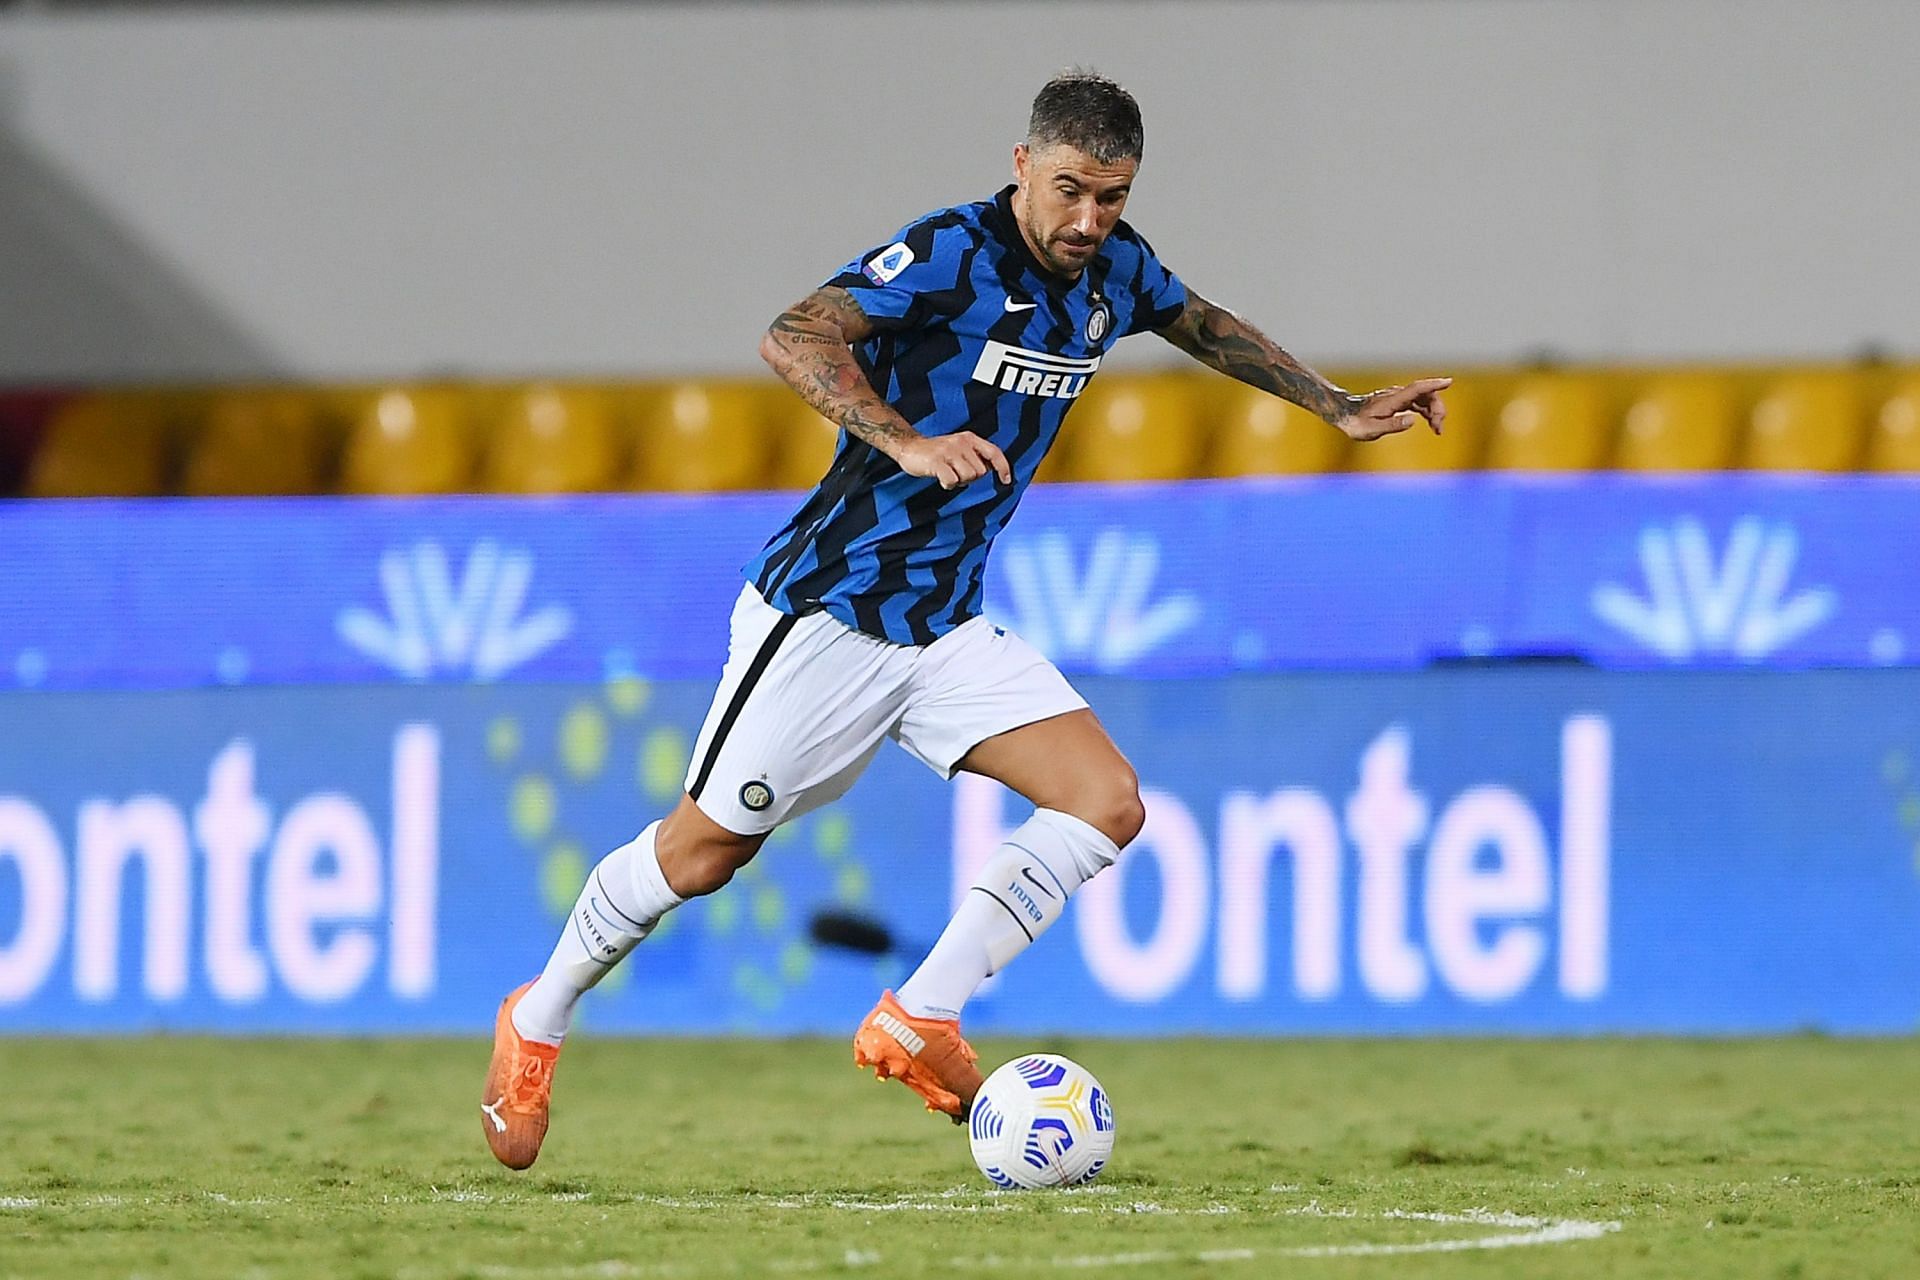 Alekasandar Kolarov in action for Inter Milan